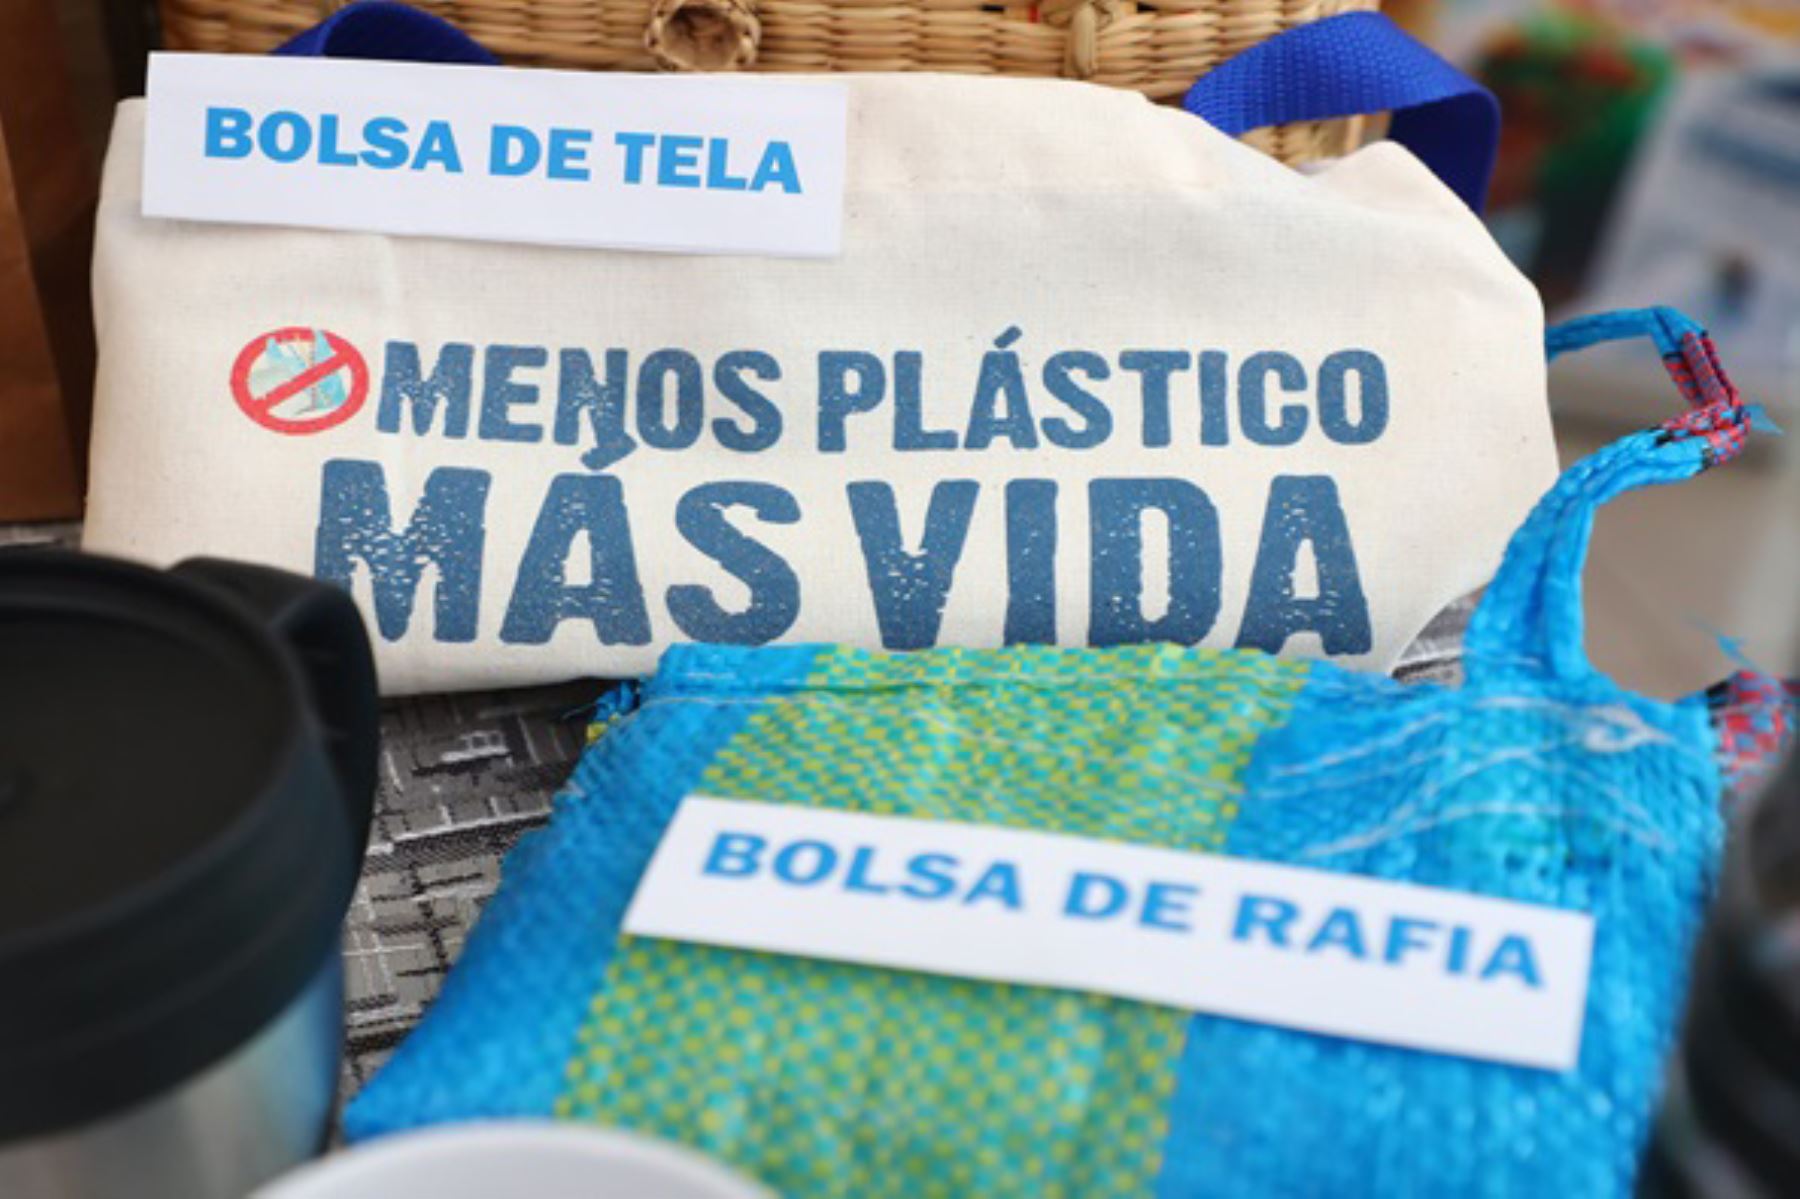 La campaña “Menos plástico, más vida” tiene como objetivo promover lugares libres de plástico de un solo uso y envases descartables en el país. ANDINA/ Minam.